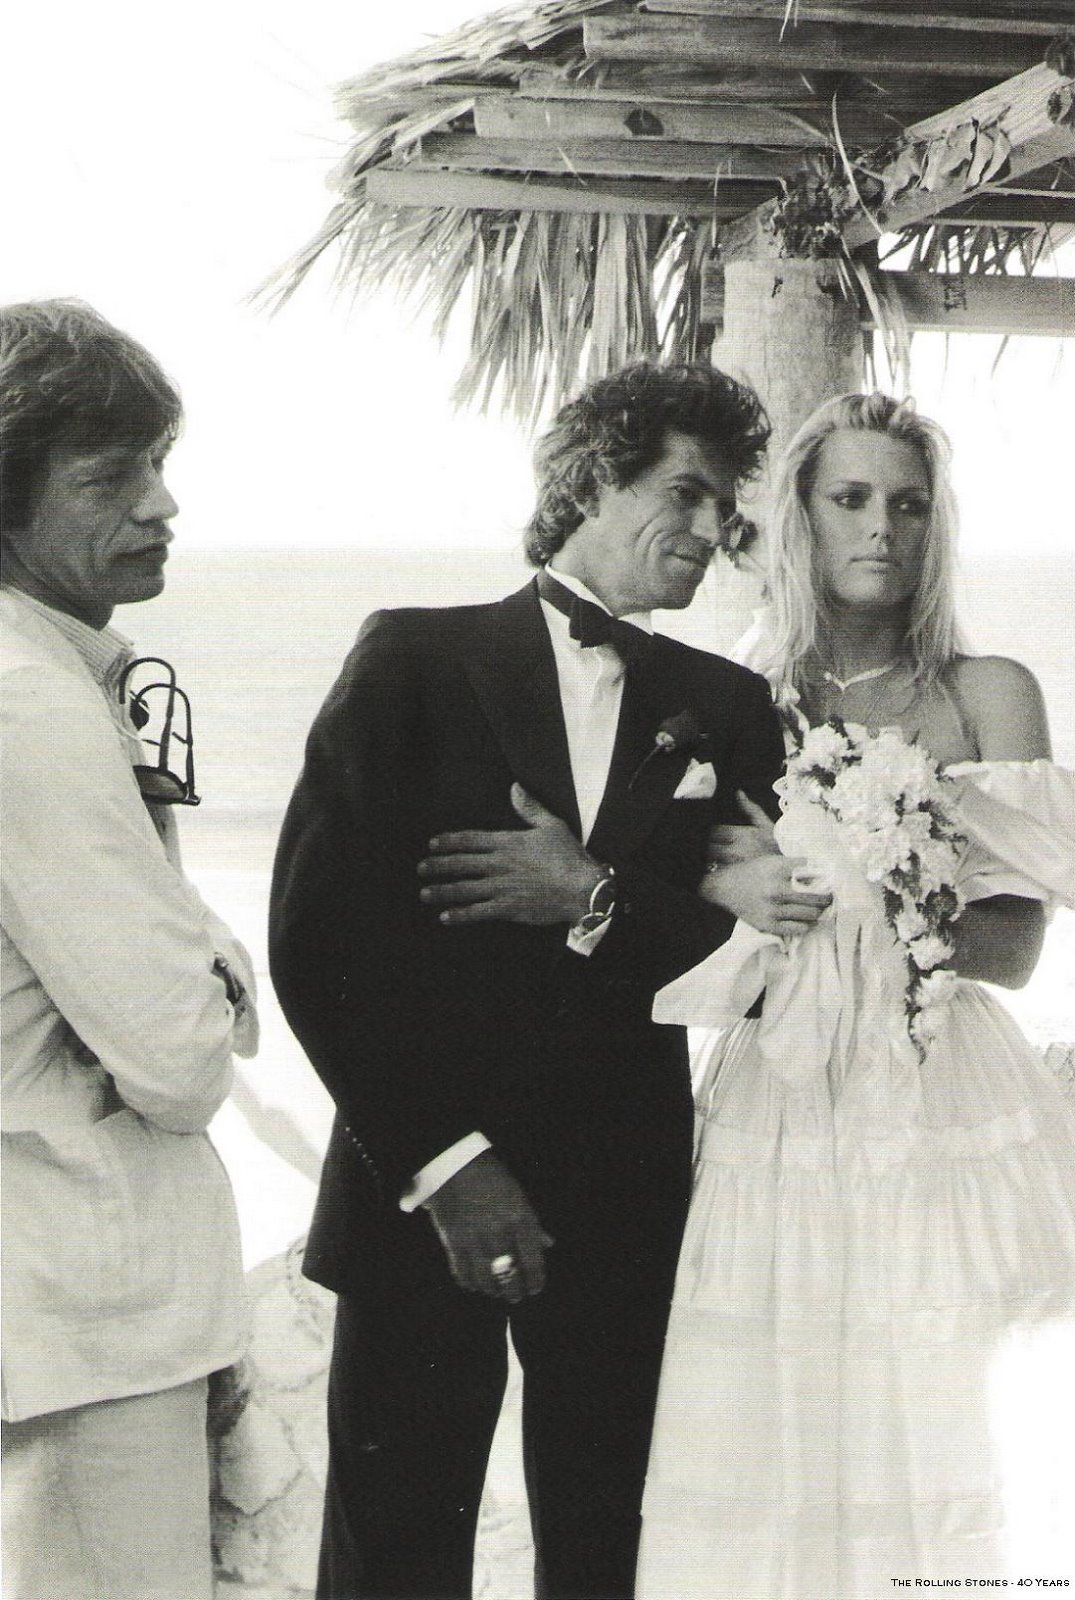 La boda de Keith Richards de The Rolling Stones